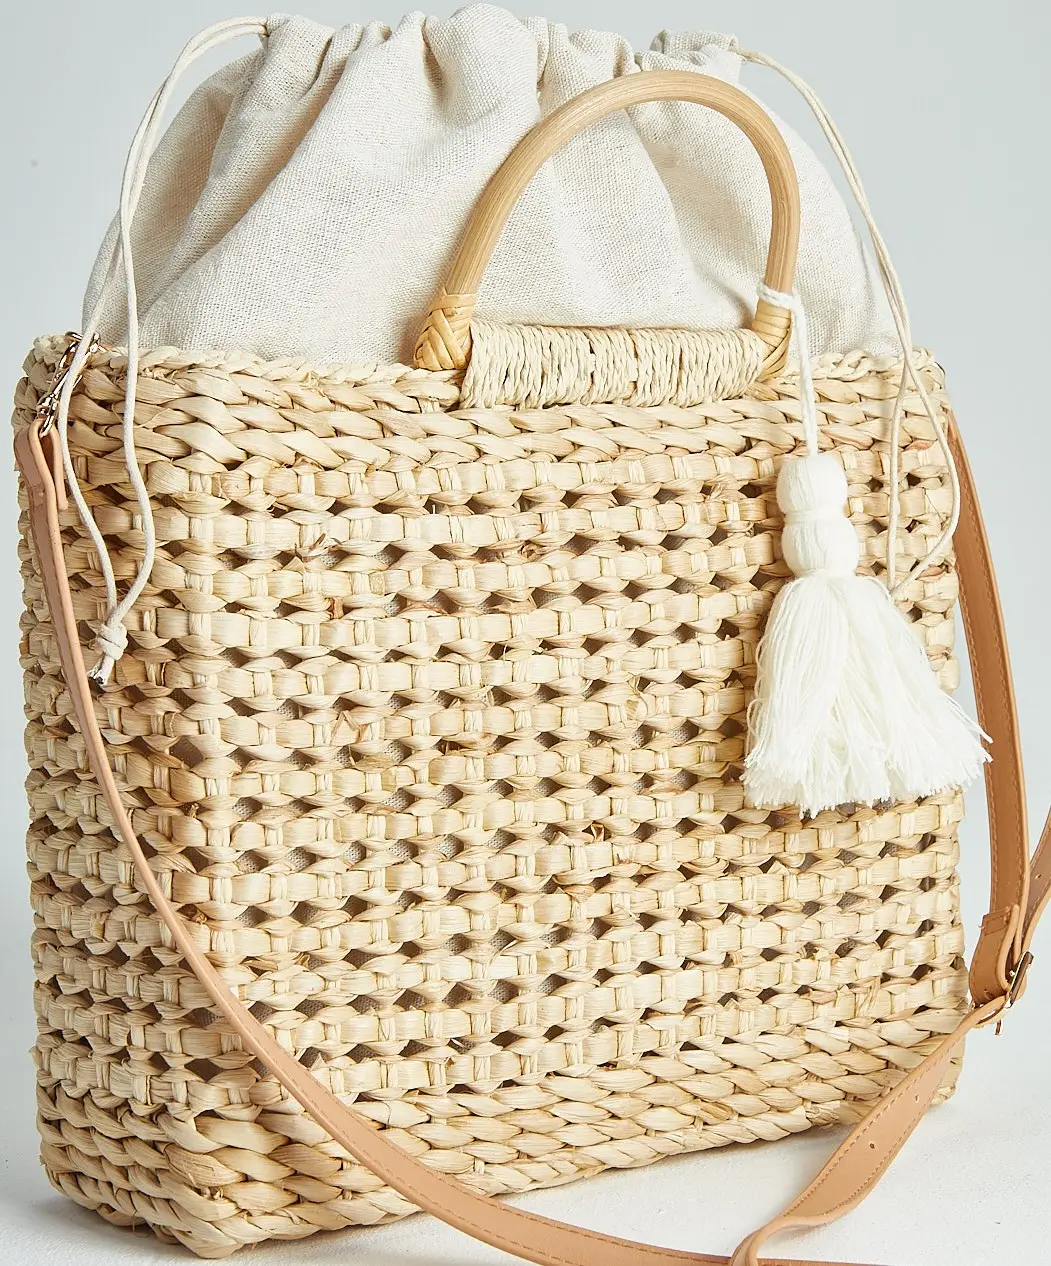 Handcrafted angepasst mais-schale aushöhlen stroh handtasche mit zwei PU leder griffe, weiß quaste